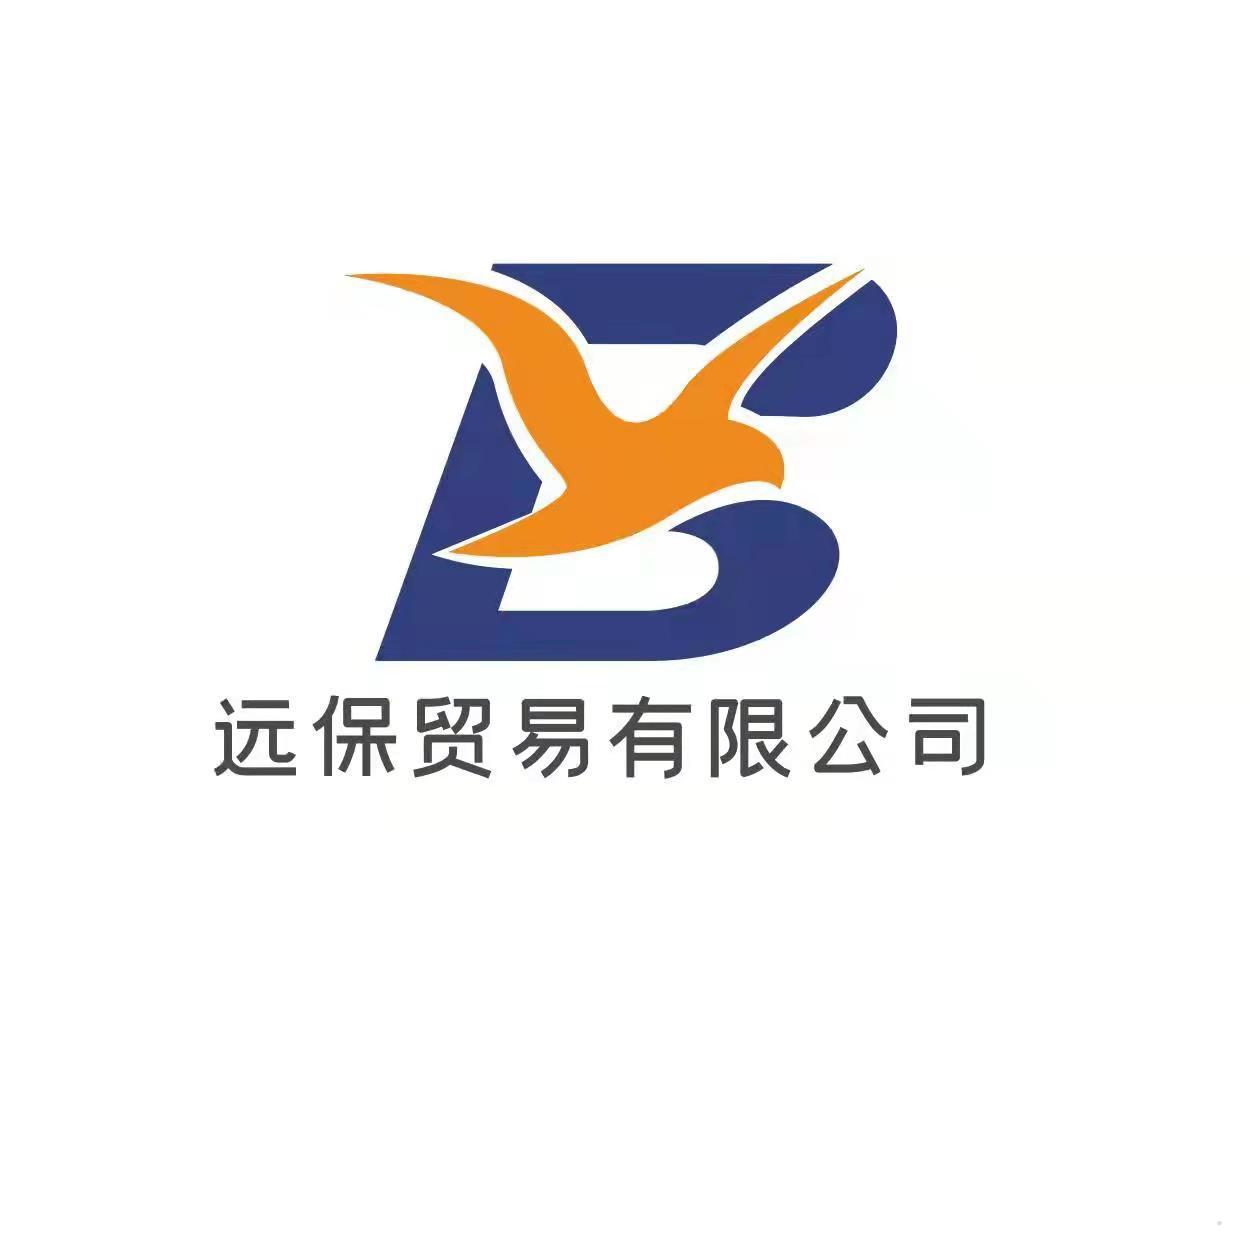 远保贸易有限公司logo